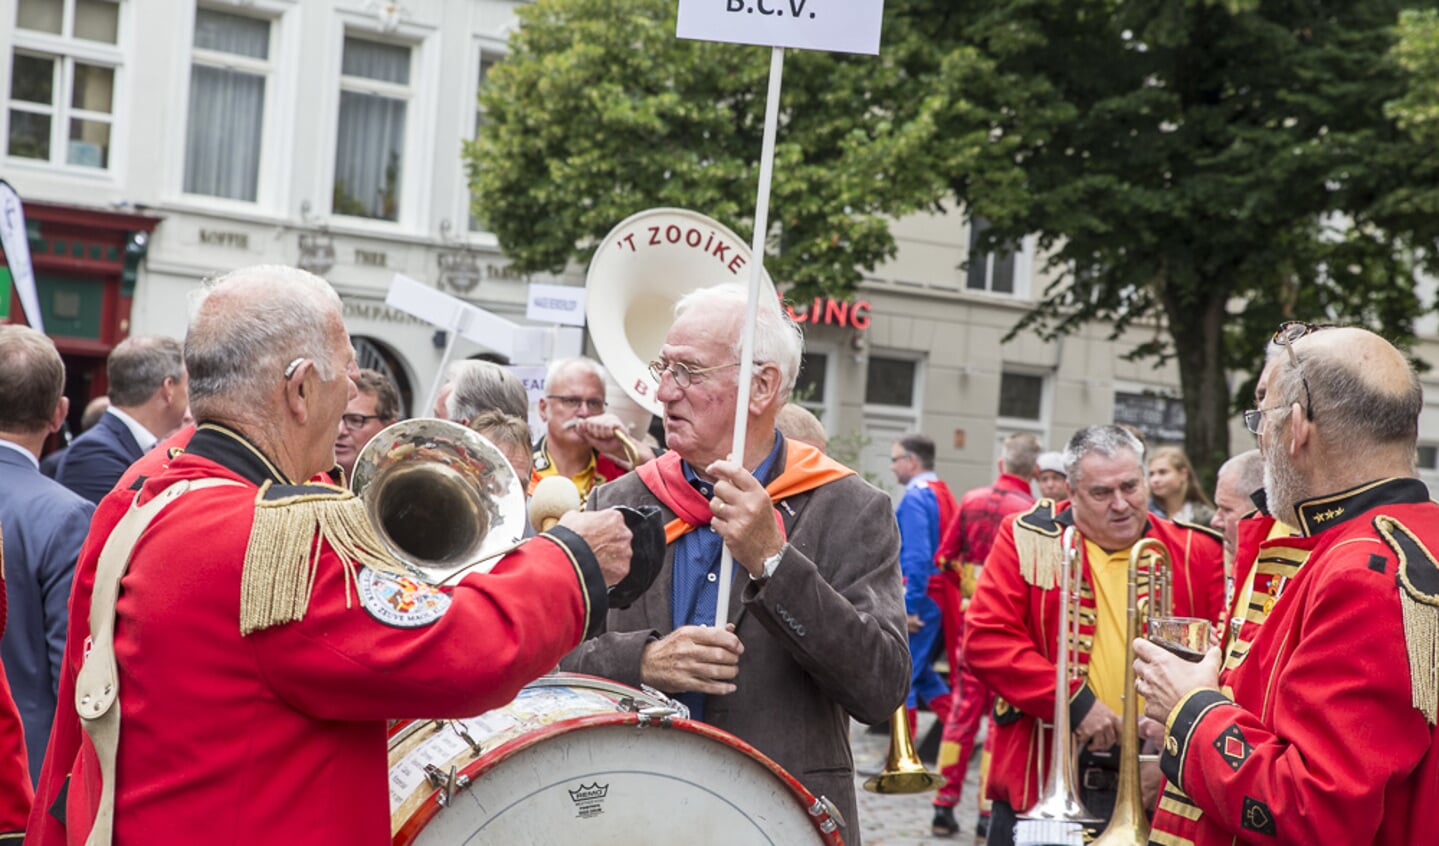 VVV-directeur Marlice Dreessen werd na haar afscheidsreceptie verrast met een parade van Bredase evenementen.